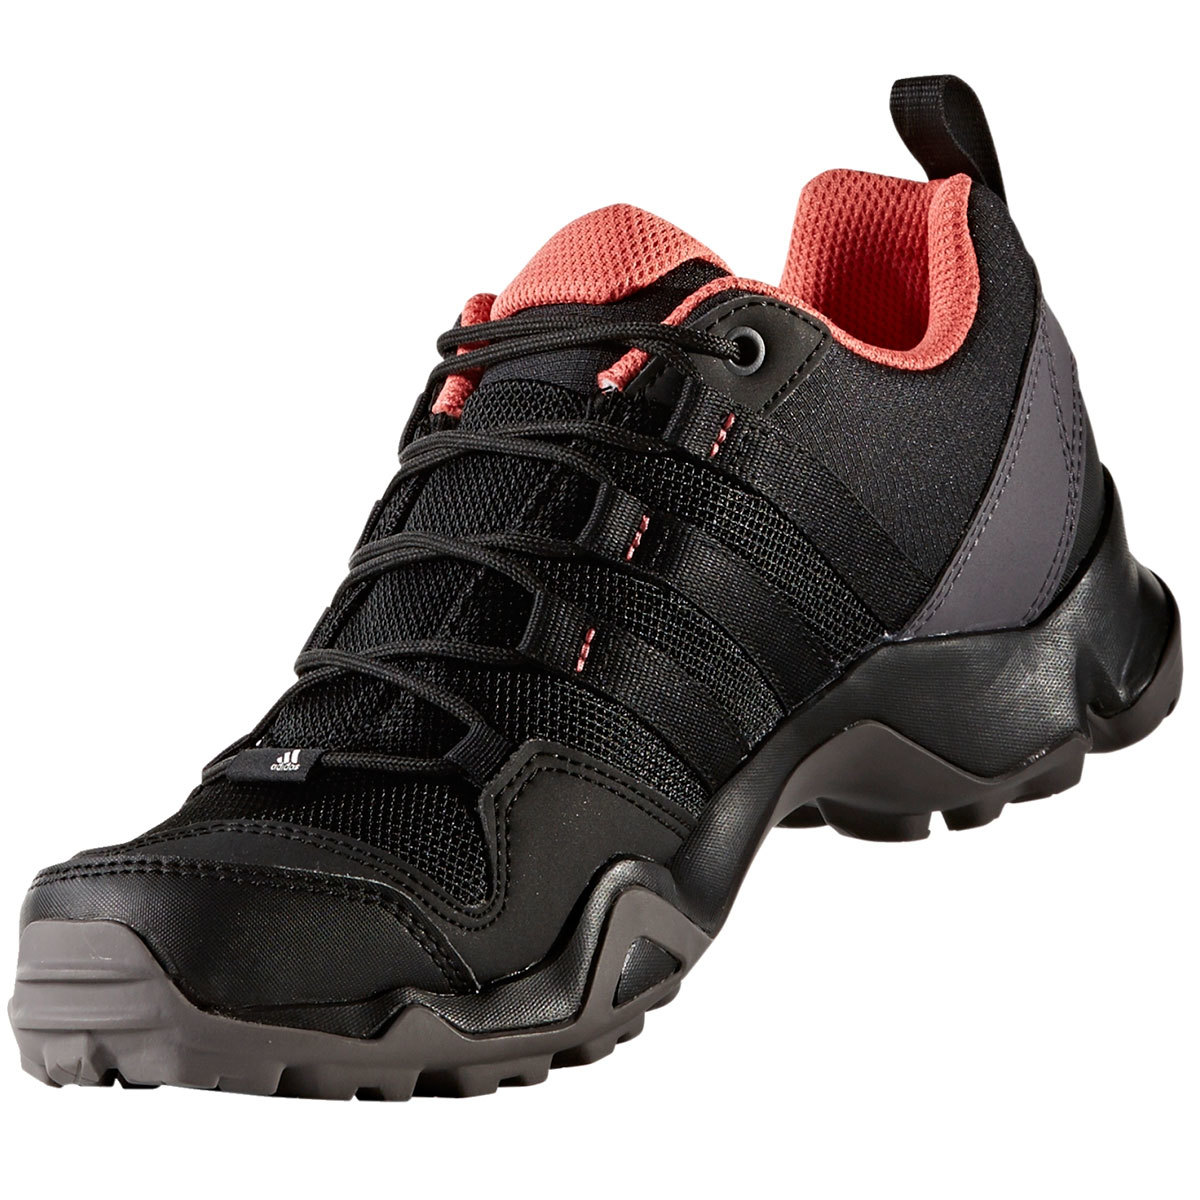 terrex ax2r hiking shoes